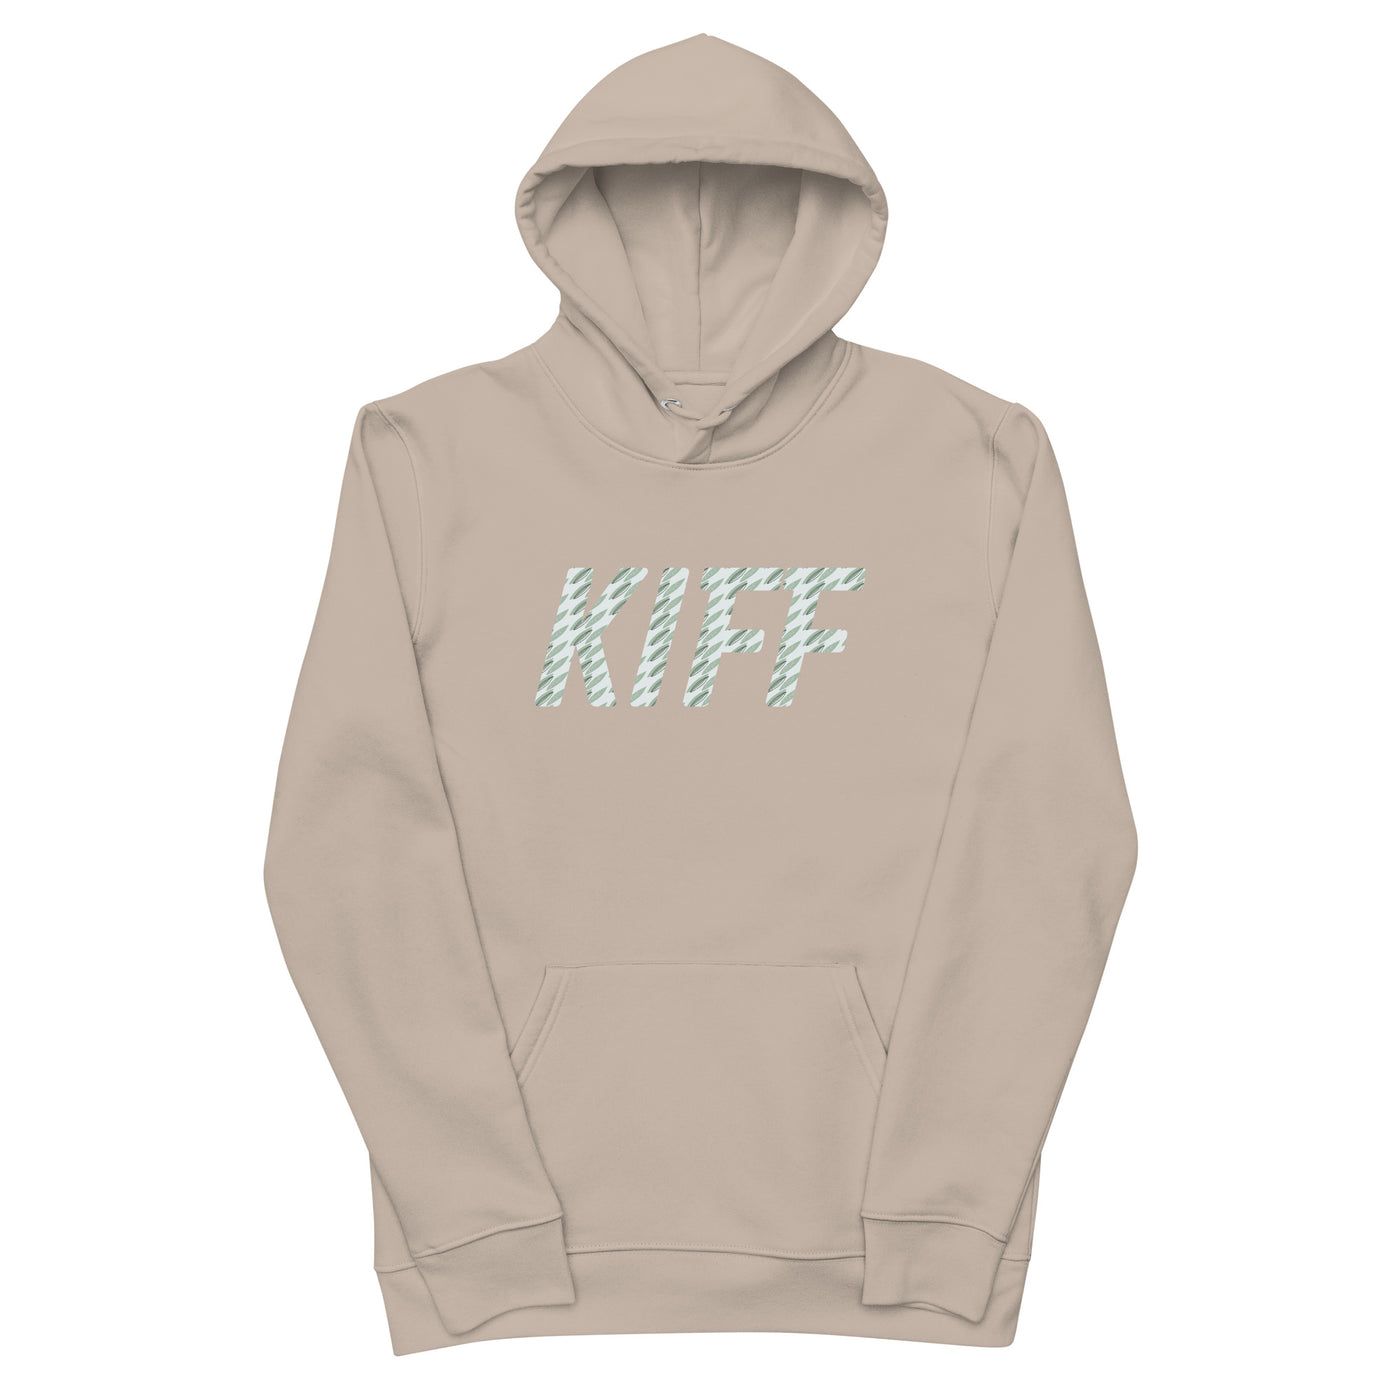 KiffLab hoodie